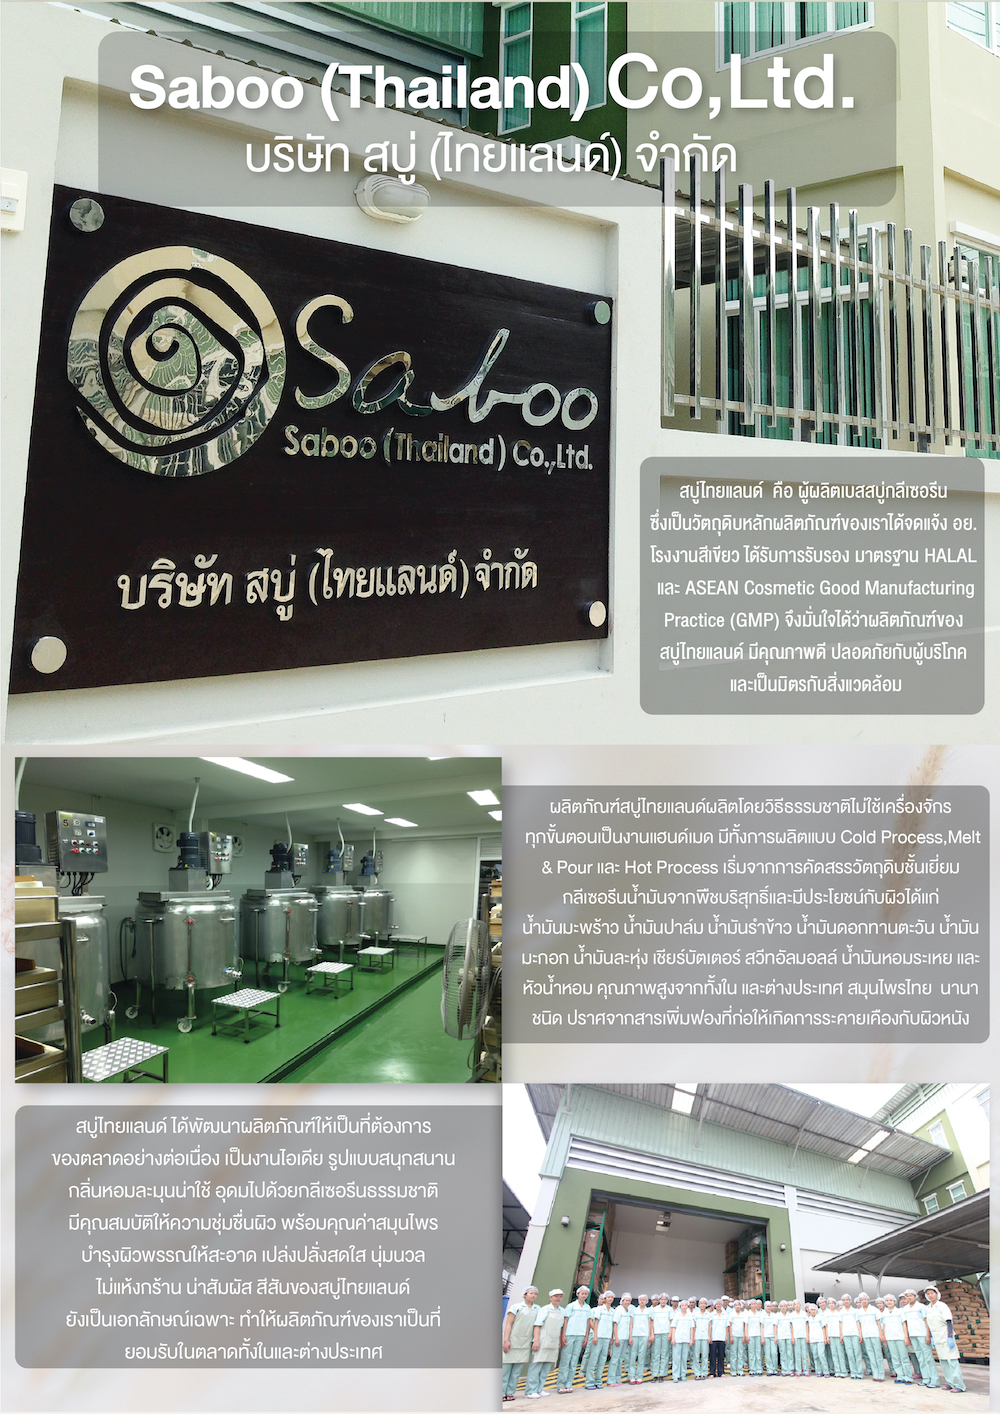 Saboo Thailand,Saboo Natural Soap Black Box ,สบู่ไทยแลนด์,สบู่,สบู่ล้างหน้าใส,สบู่ทำความสะอาดหน้า